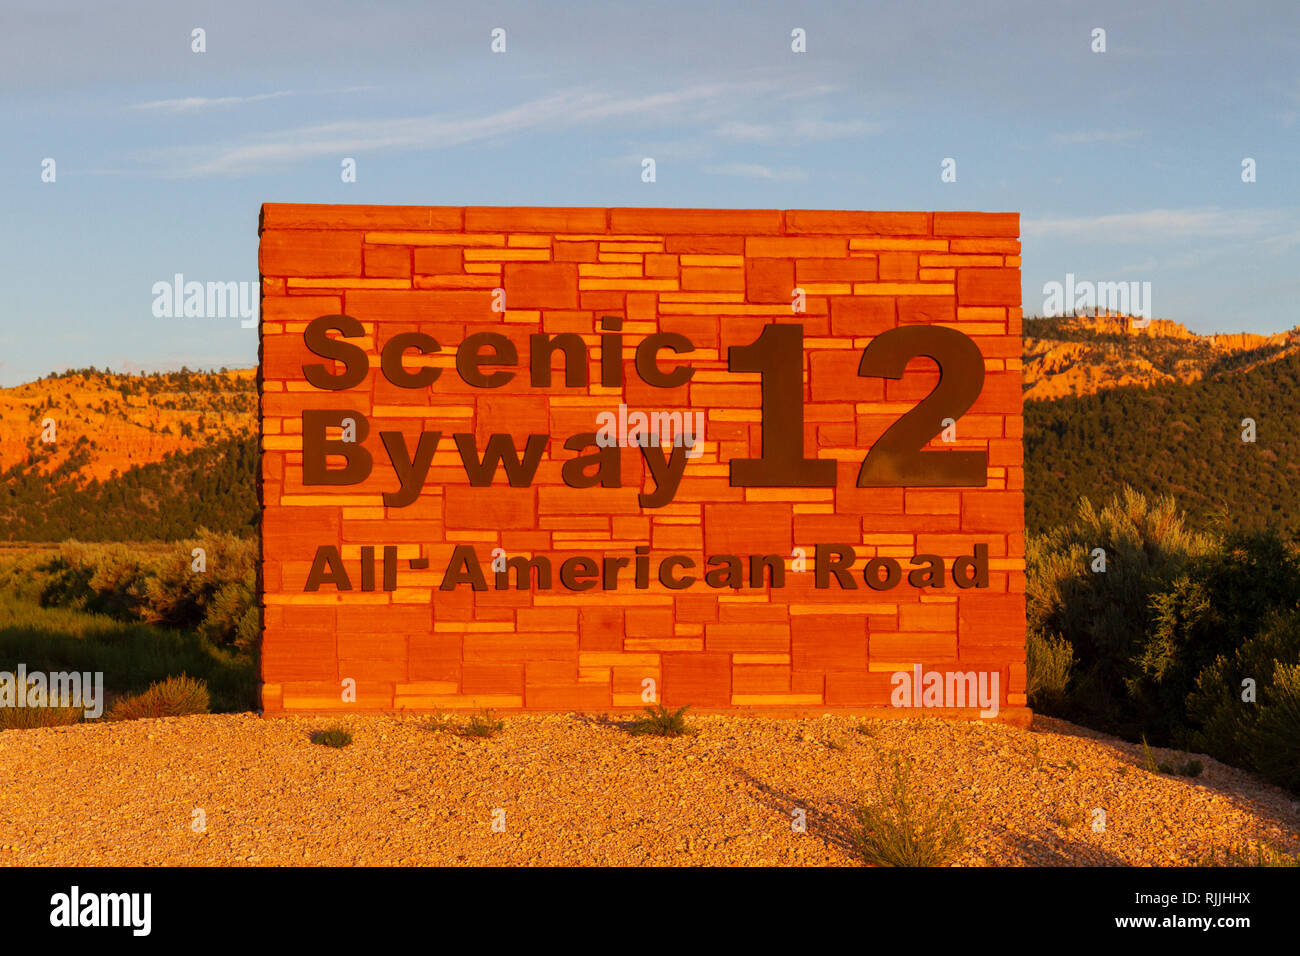 Scenic Byway 12, tutti americani cartello stradale che conduce al Red Canyon, Dixie National Forest in Utah, Stati Uniti. Foto Stock